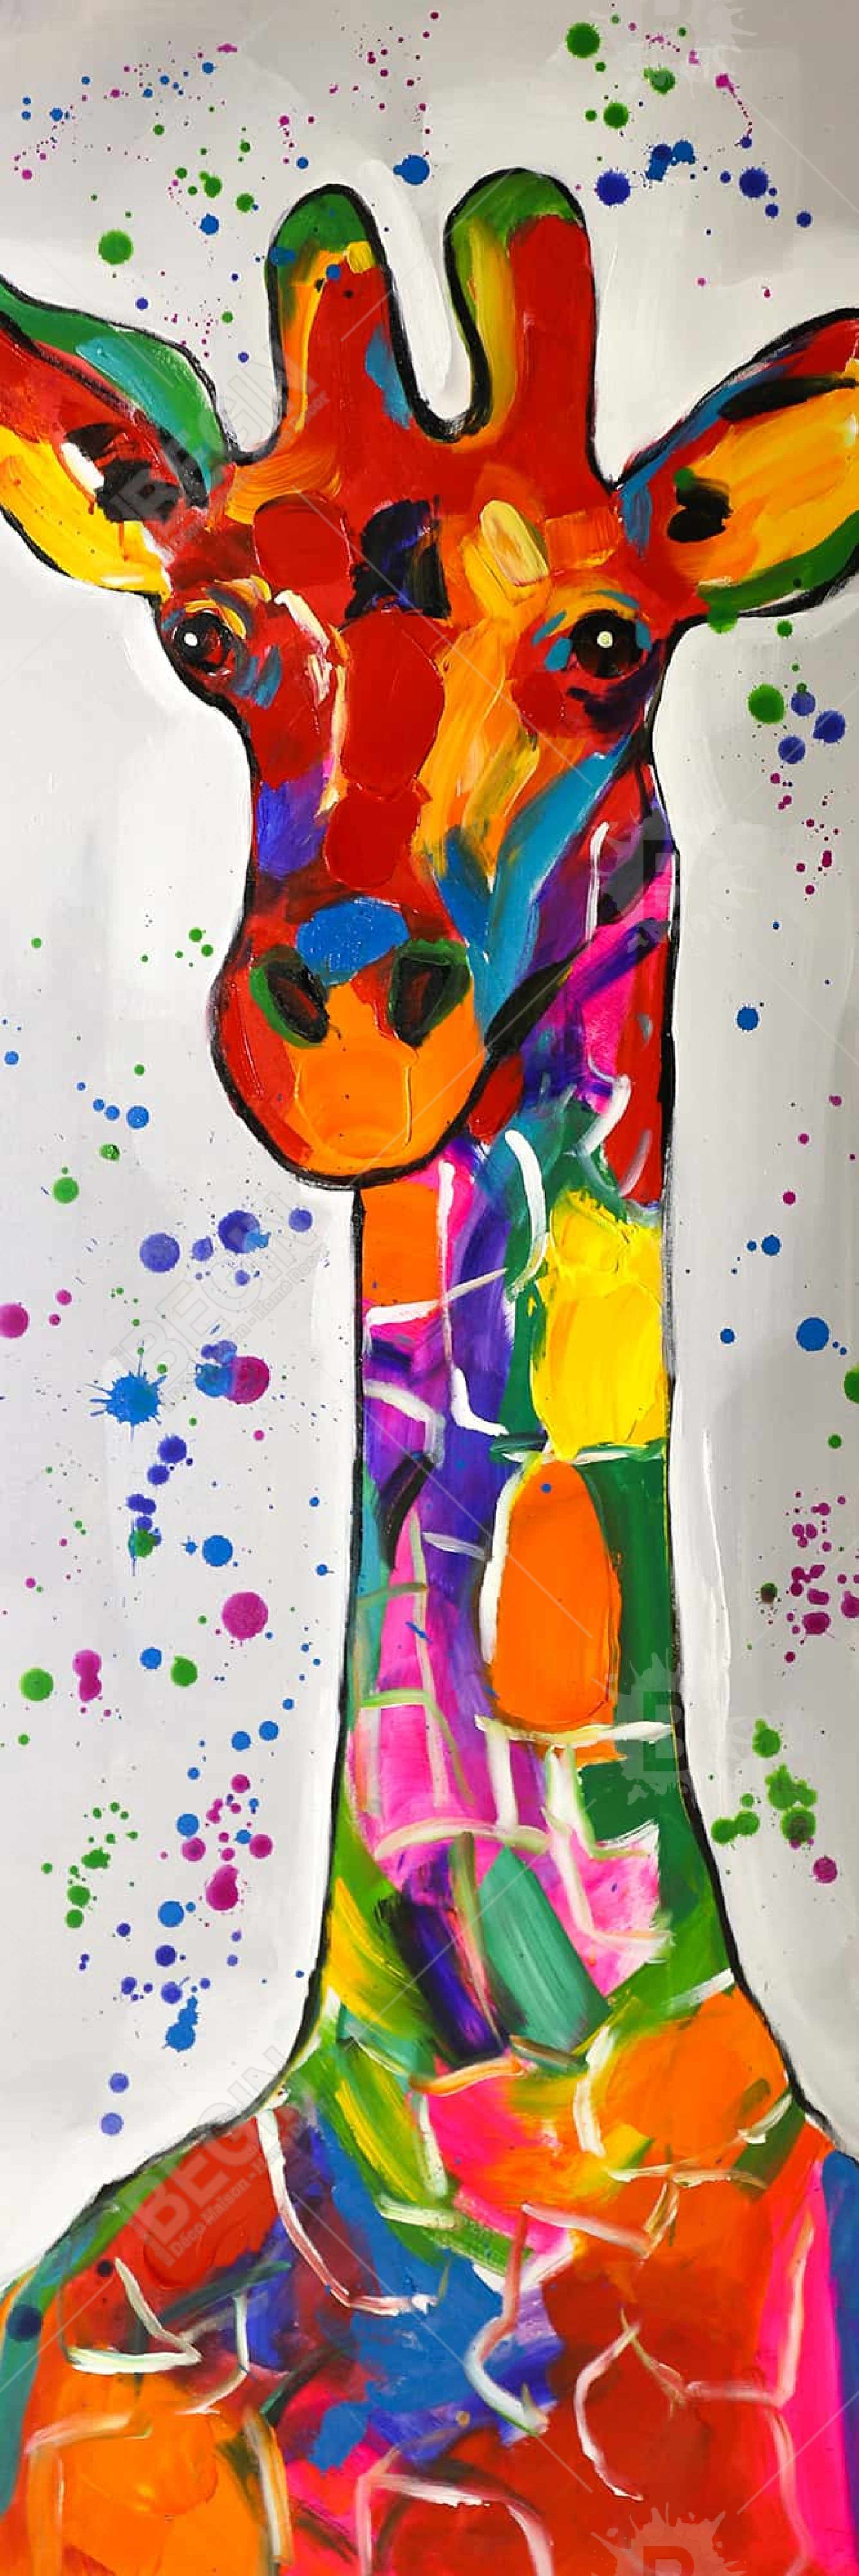 Girafe abstraite et colorée avec éclats de peinture